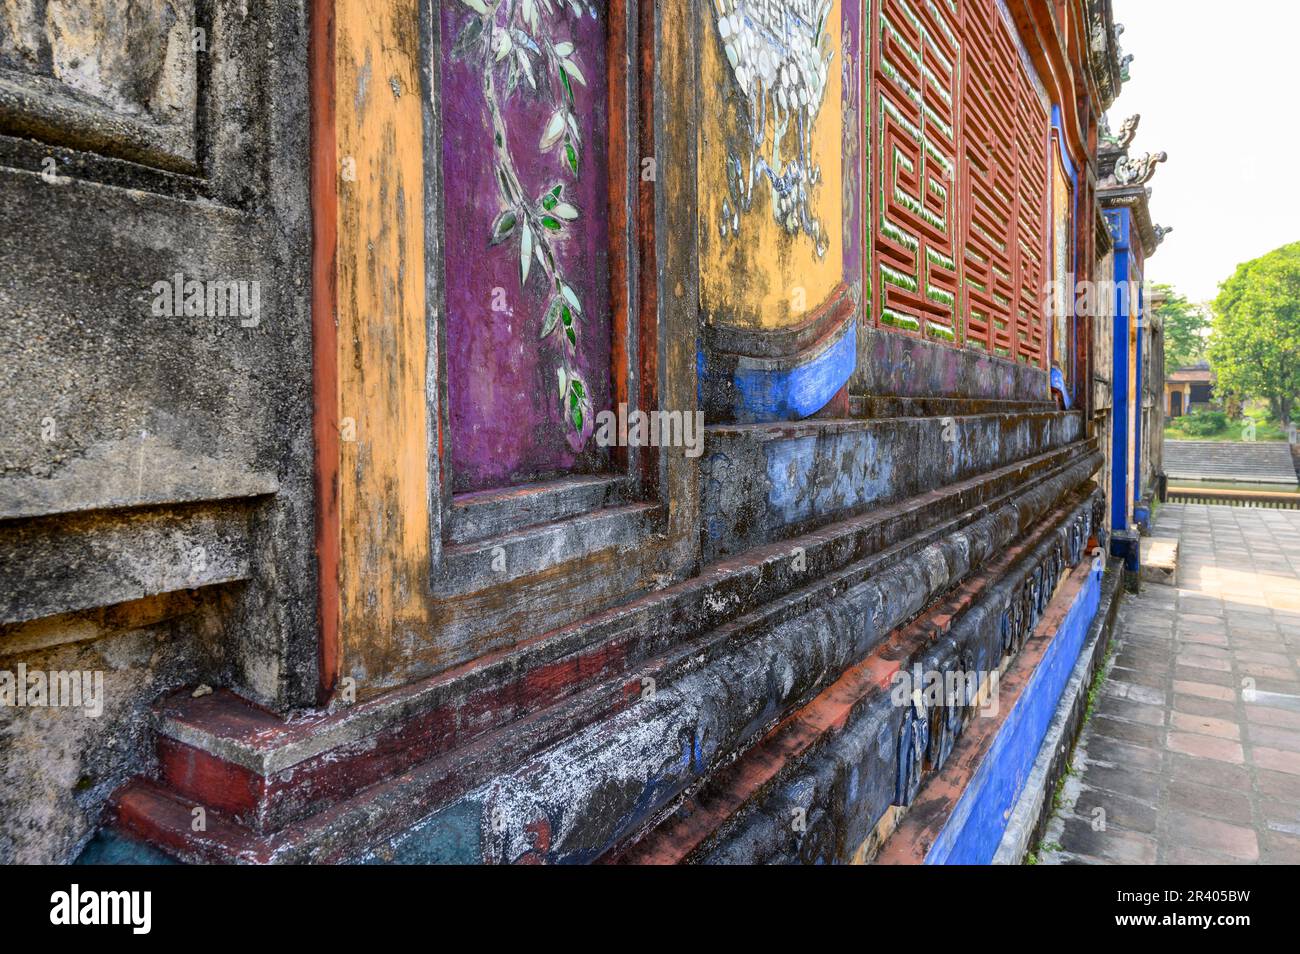 Dettagli su un muro nel Giardino di Thieu Phuong nella Città Imperiale, Cittadella di Hue, l'antica capitale del Vietnam. Foto Stock